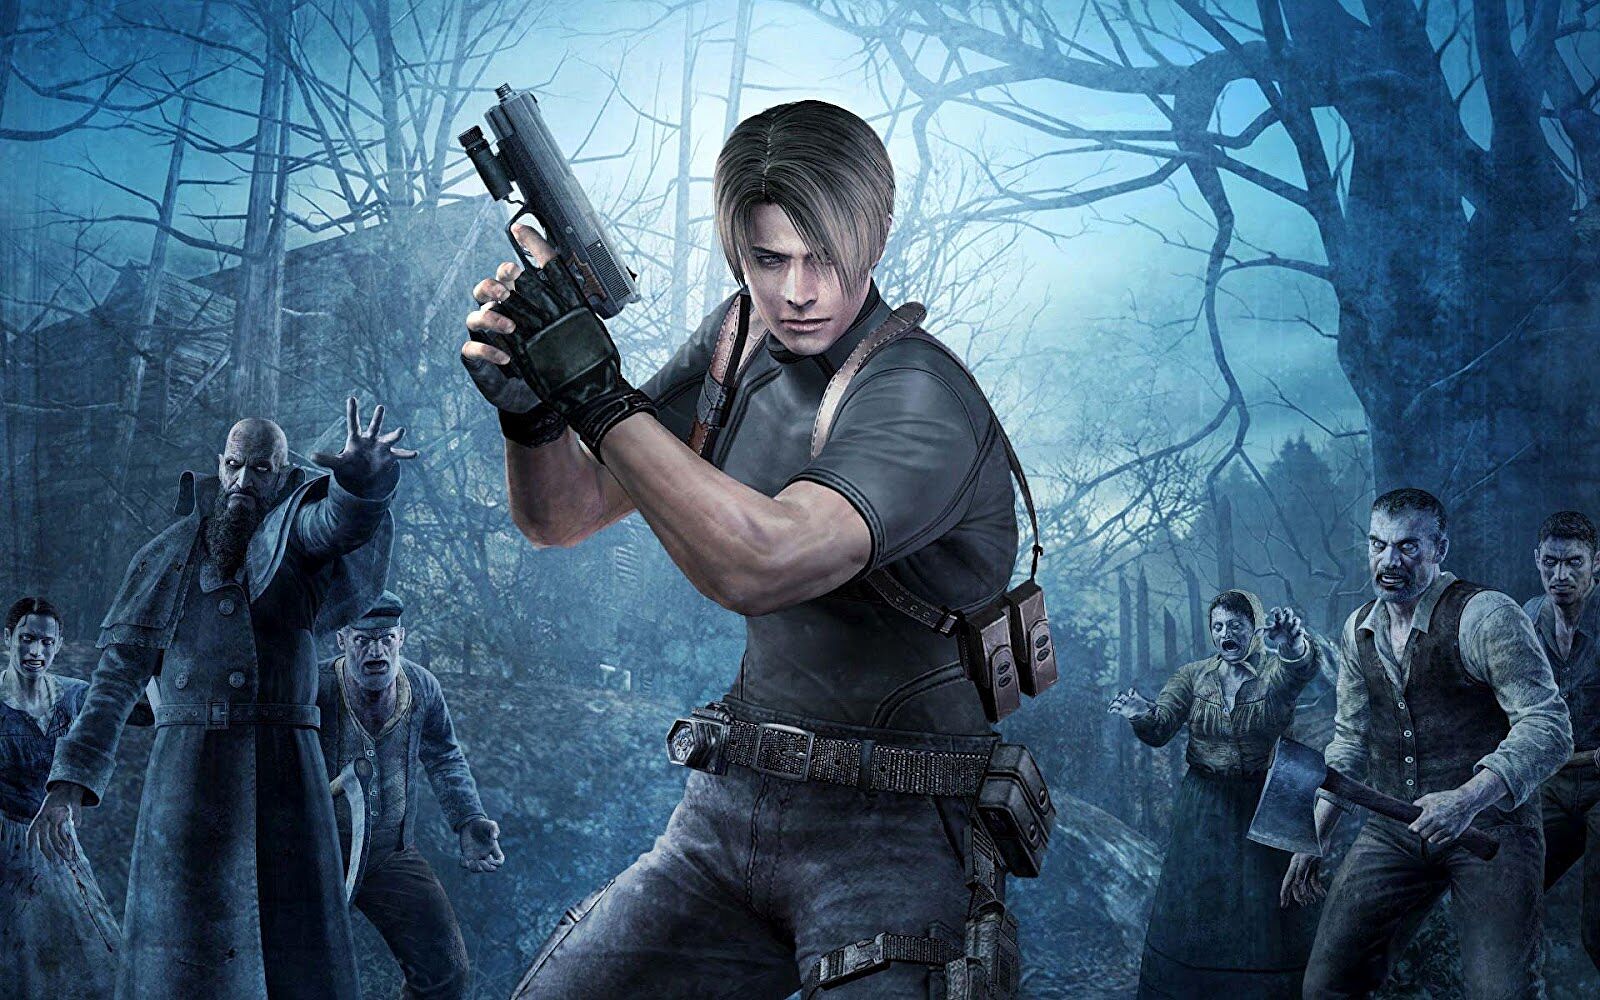 4K Leon Resident Evil 4 Remake Wallpaper #5021h